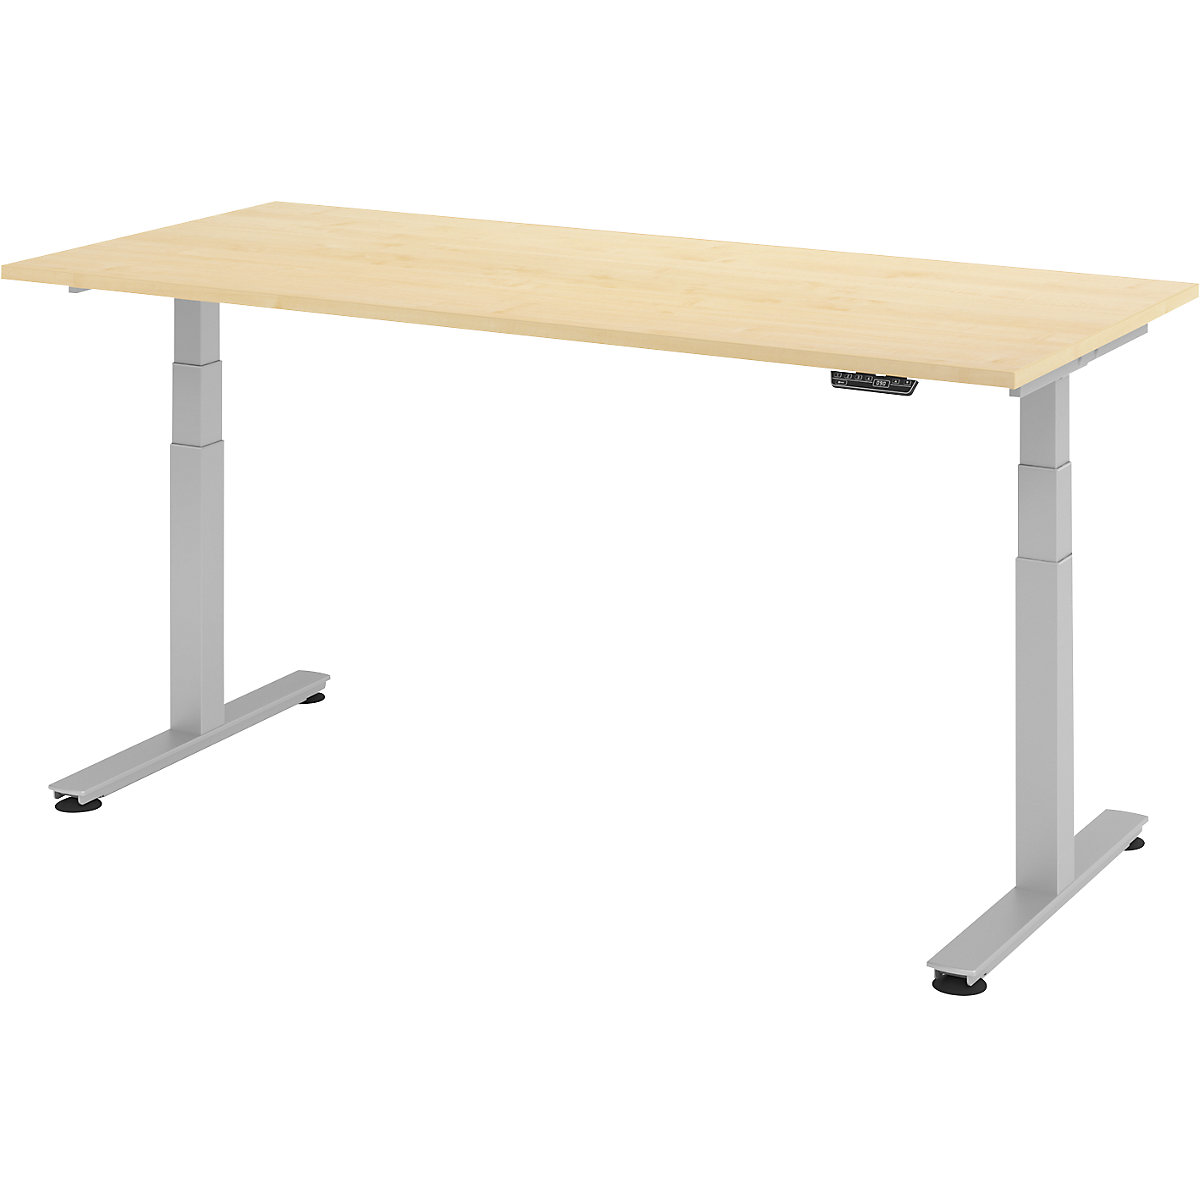 Sta-bureautafel, elektrisch in hoogte verstelbaar UPLINER-2.0, recht, b x d = 1800 x 800 mm, ahornhout-16